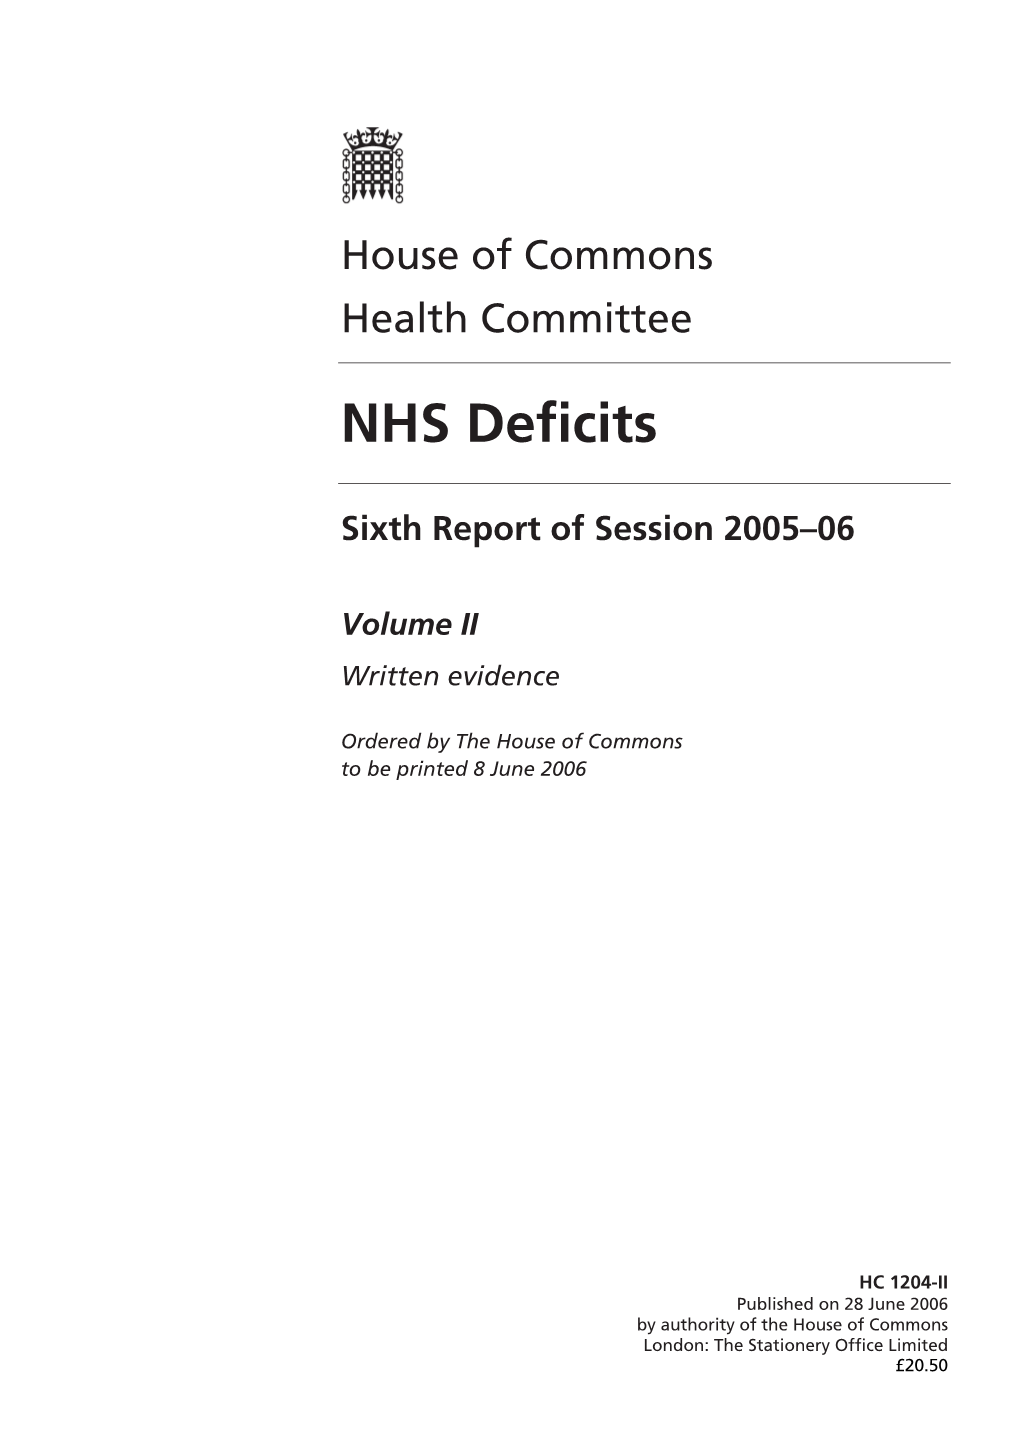 NHS Deficits